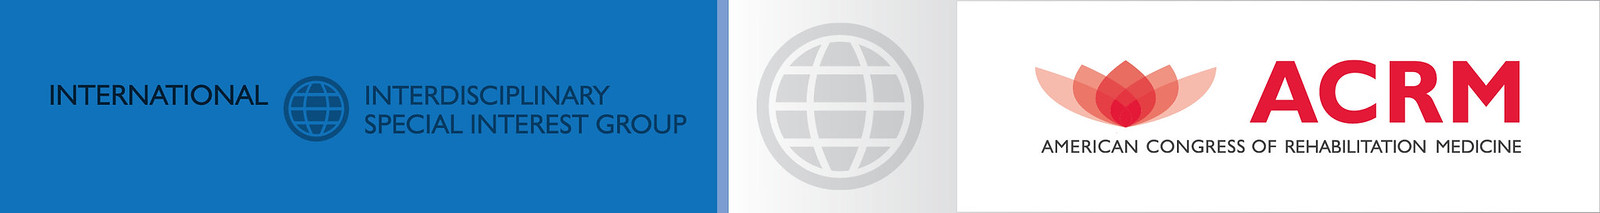 ACRM International Interdisciplinary Special Interest Group header